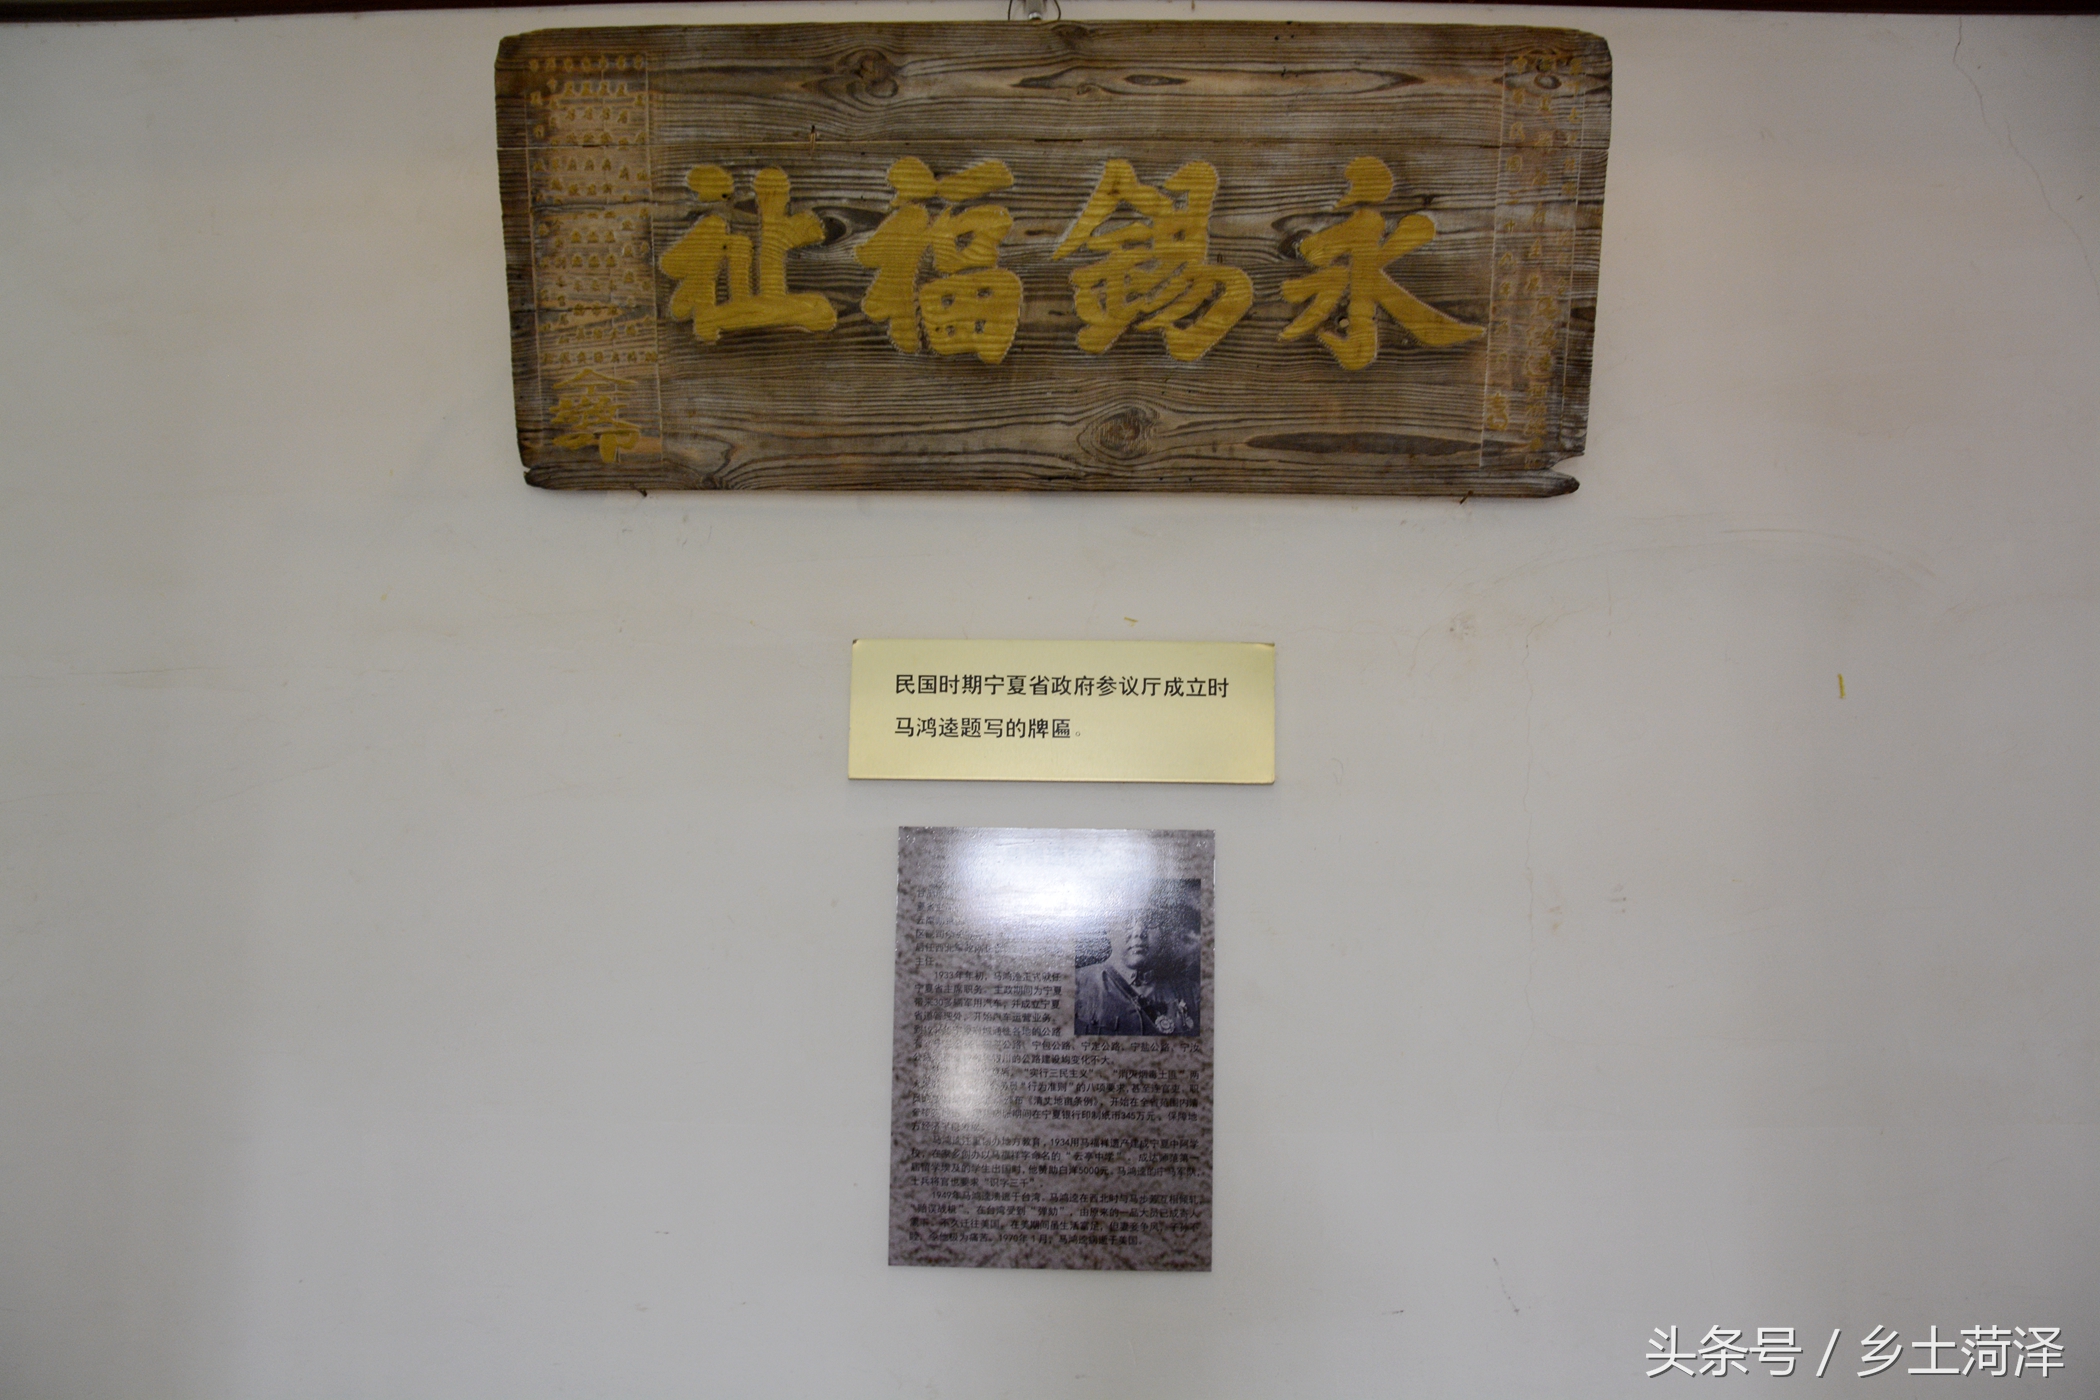 1/ 11 原宁夏省国民政府旧址,也是马鸿逵官邸旧址,原址位于宁夏